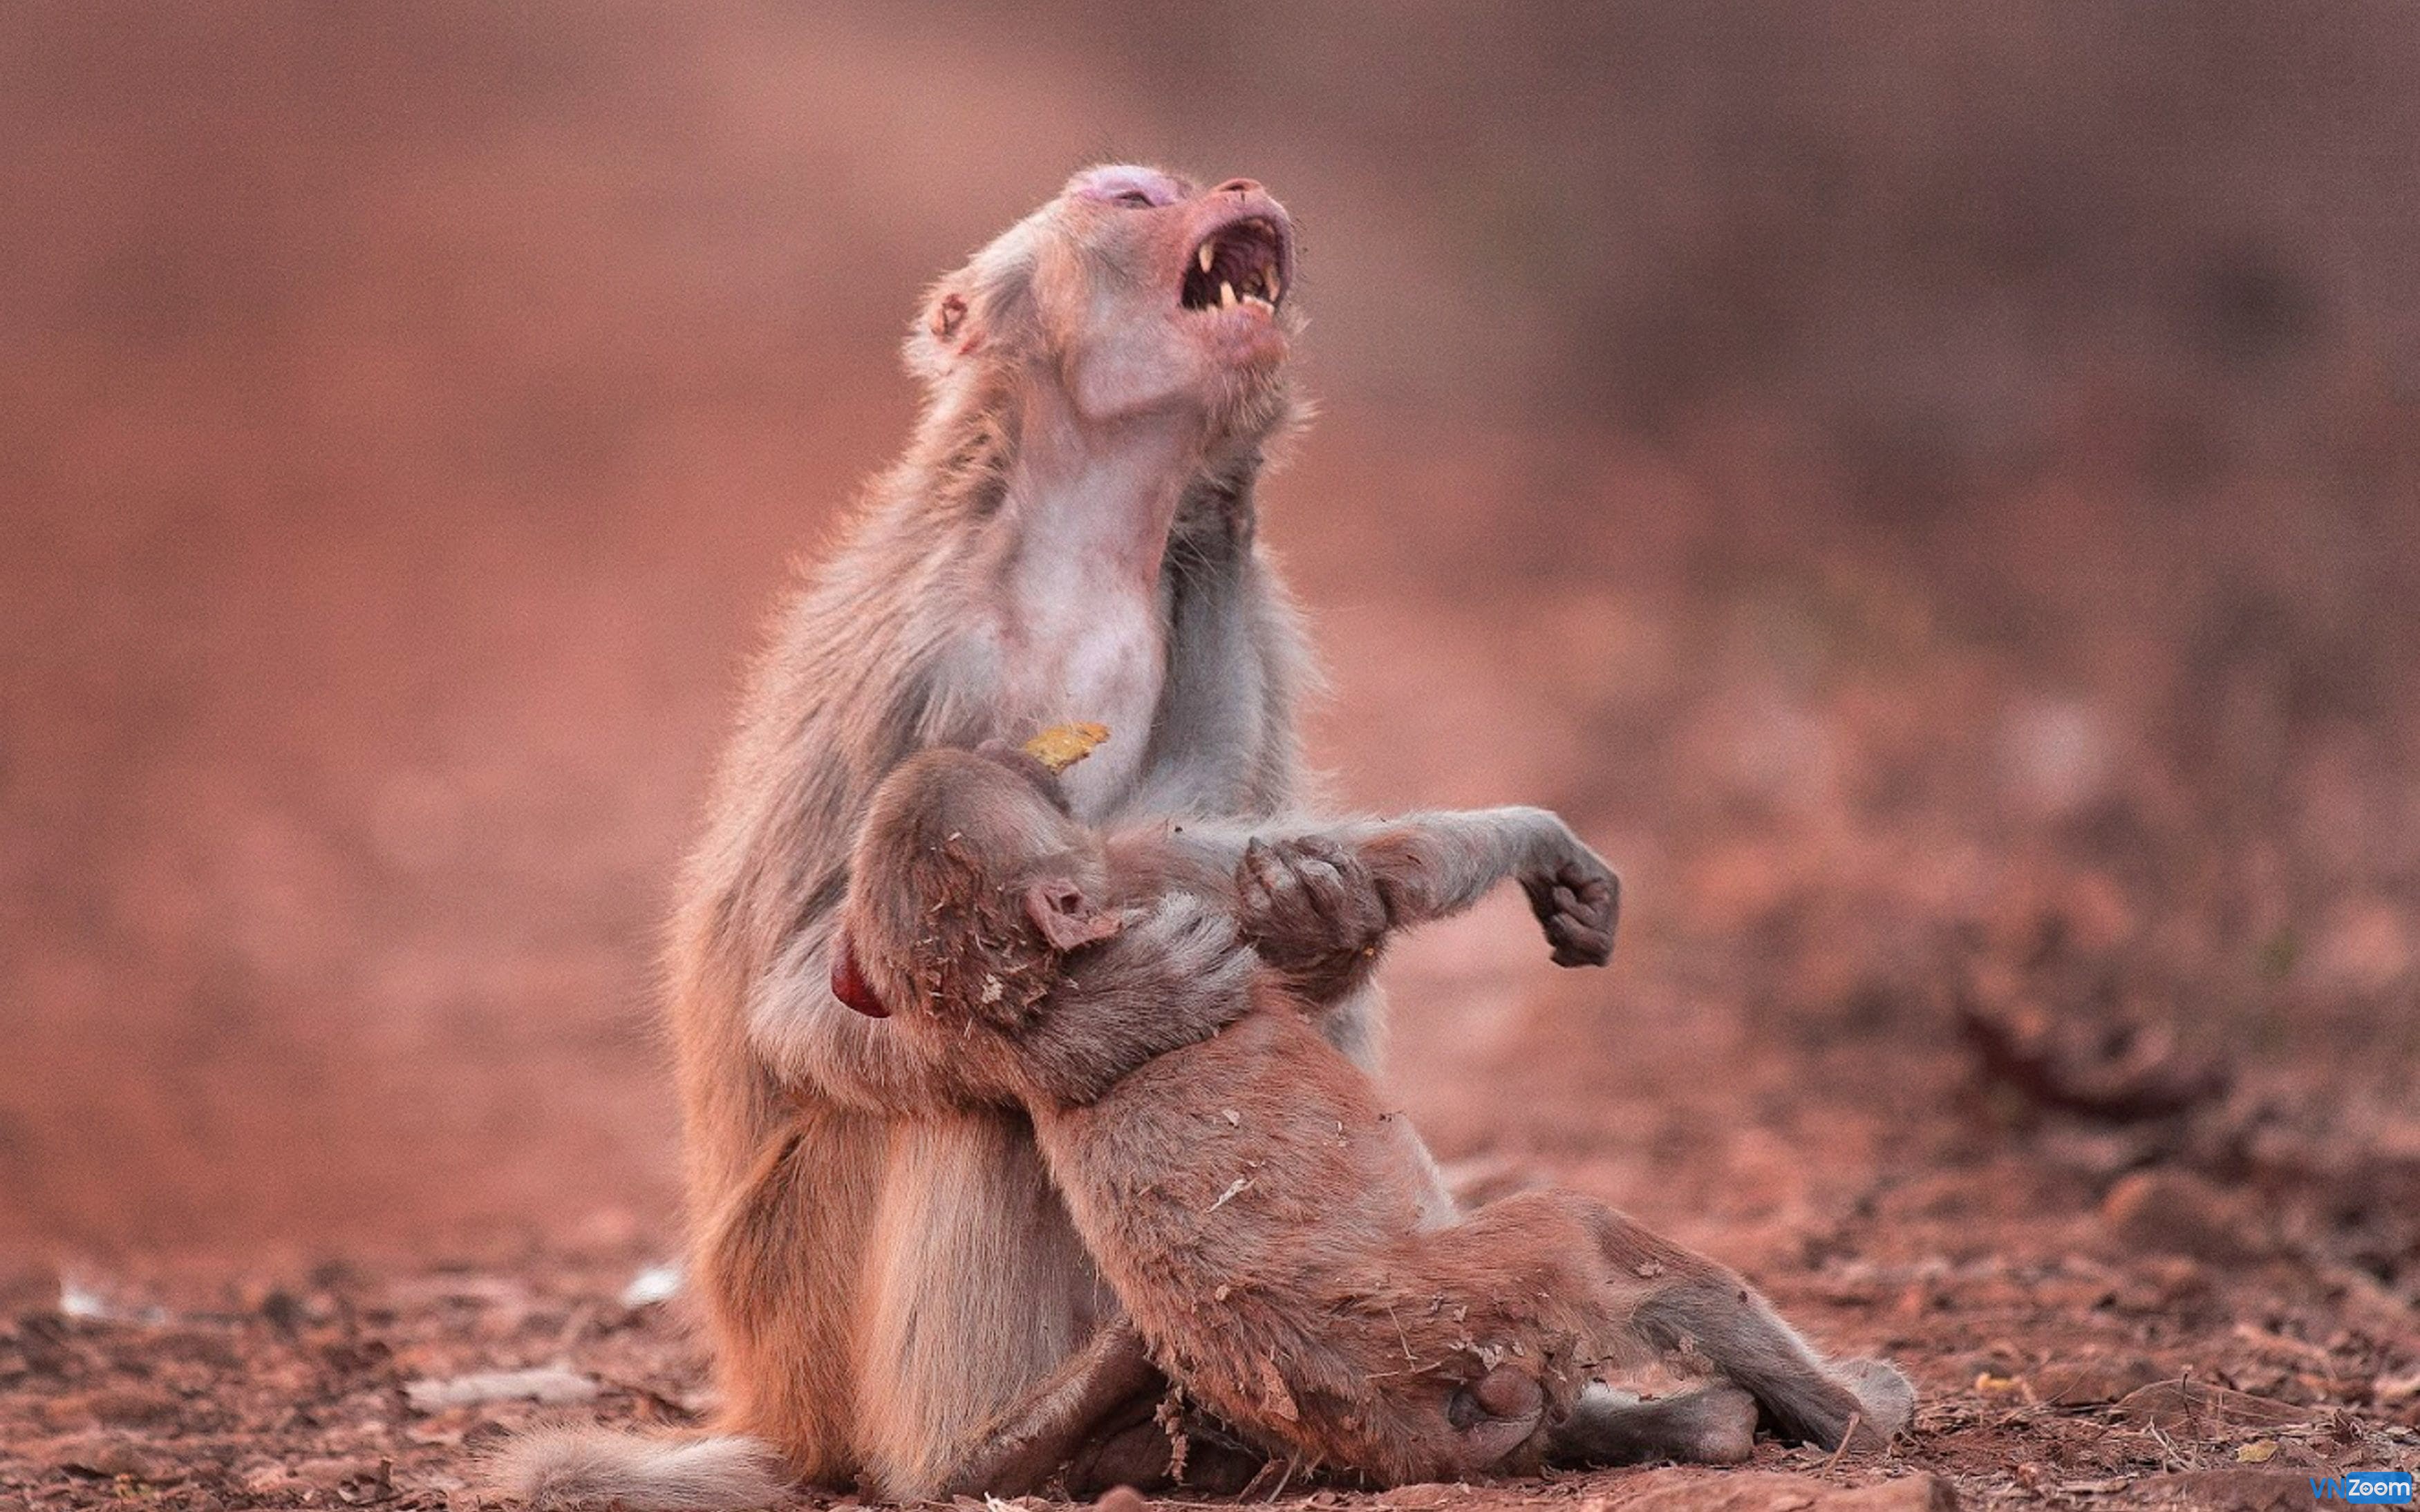 Khỉ mẹ luôn có tình cảm sâu sắc và yêu thương đàn con của mình. Xem hình ảnh này, bạn sẽ thấy một màn tình cảm gia đình đầy cảm động và đặc biệt là rất đáng yêu.